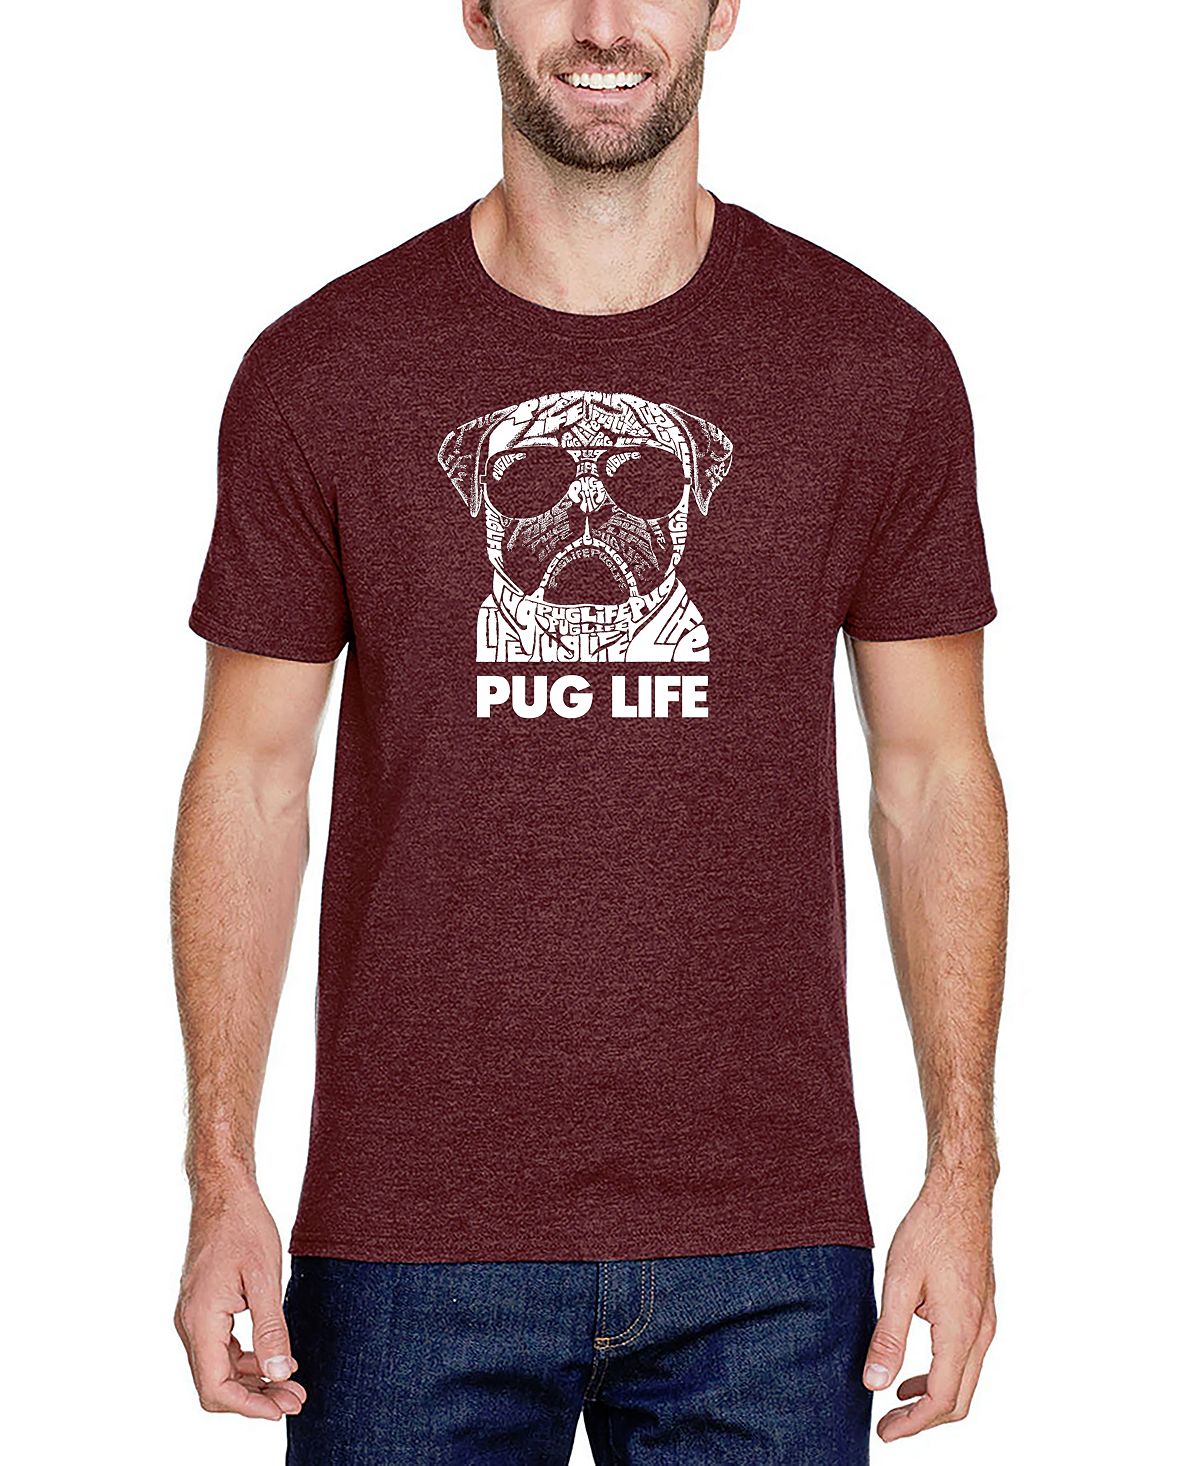 Мужская футболка premium blend word art pug life LA Pop Art